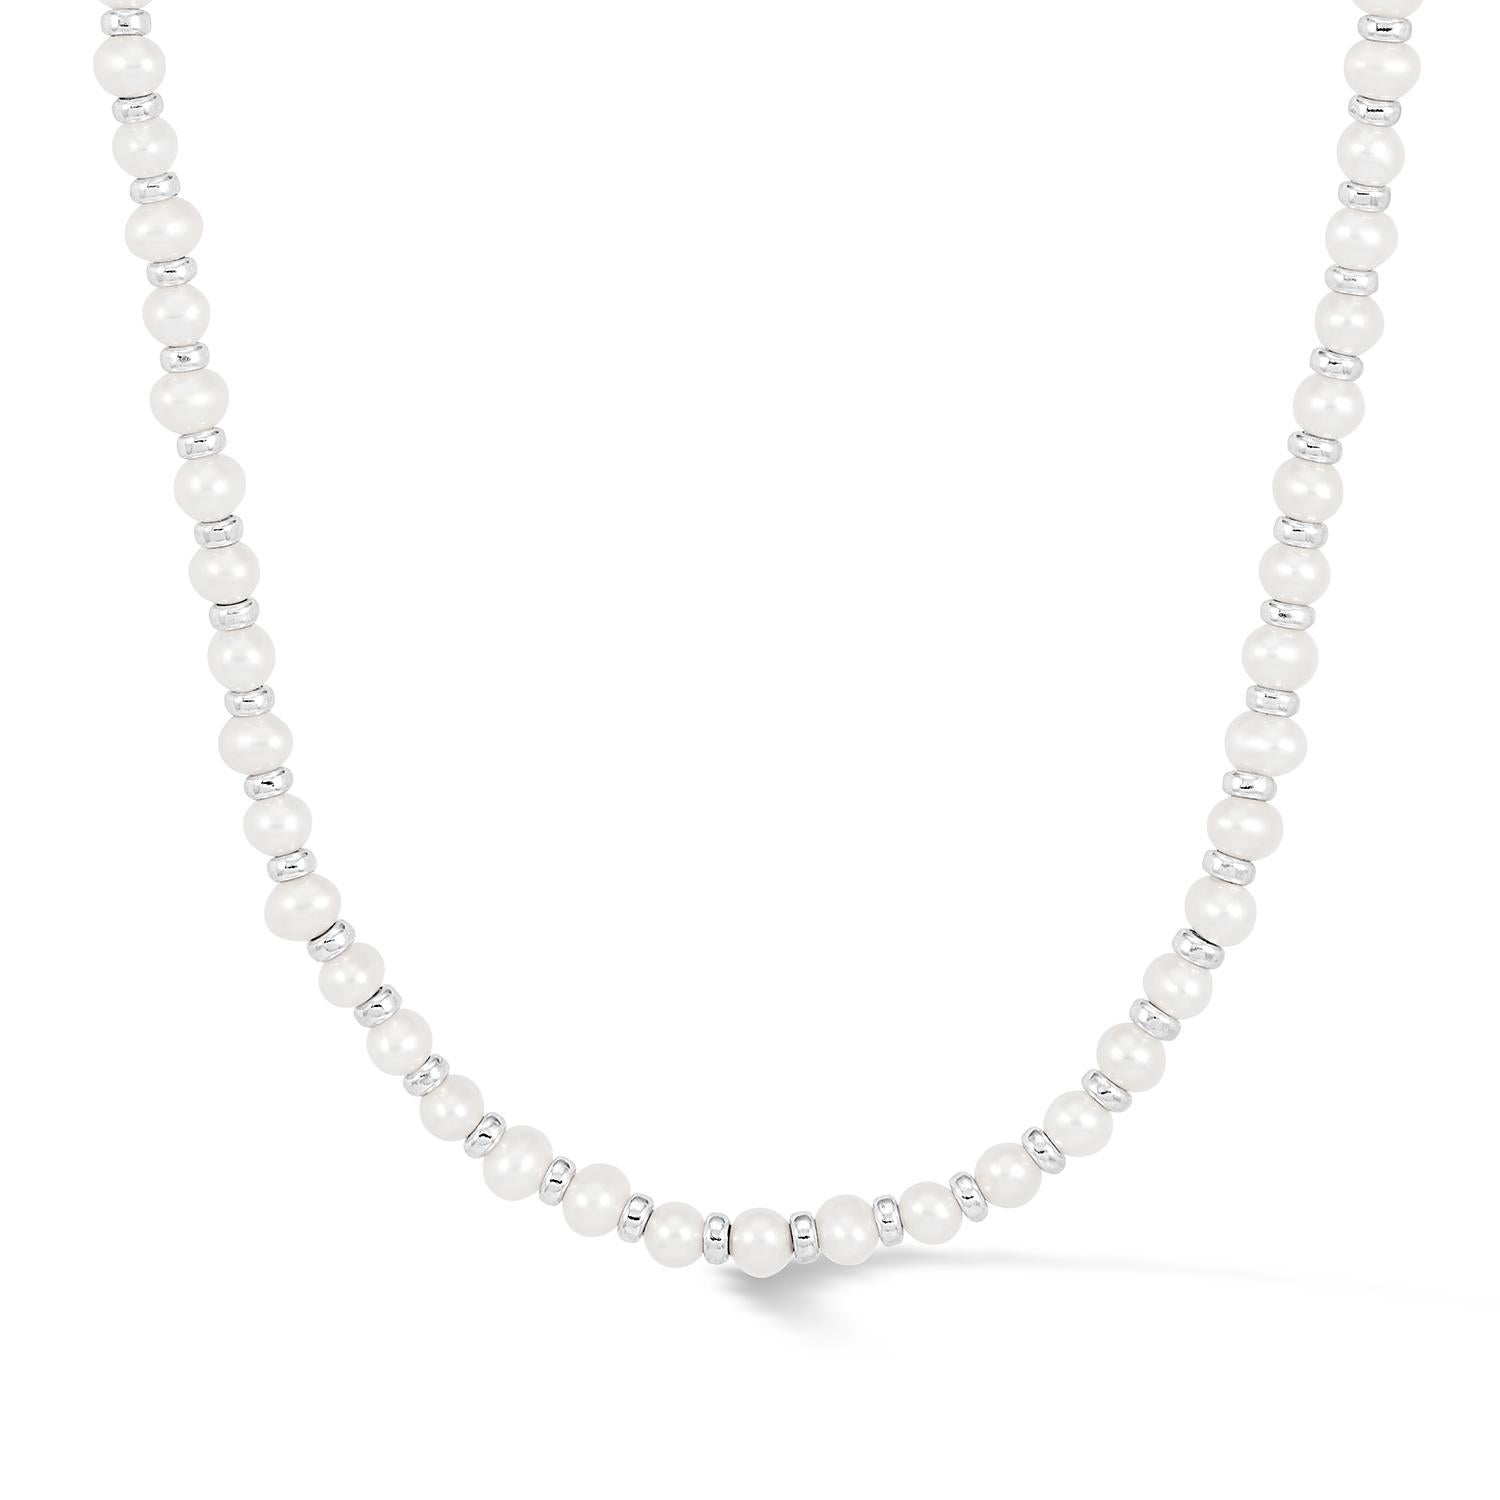 Enfilé à la main dans notre Studio de Londres, ce collier de perles se glissera sans problème dans votre collection d'accessoires de style. Le mélange moderne de perles d'eau douce blanches lustrées et de perles d'argent sterling brillantes est